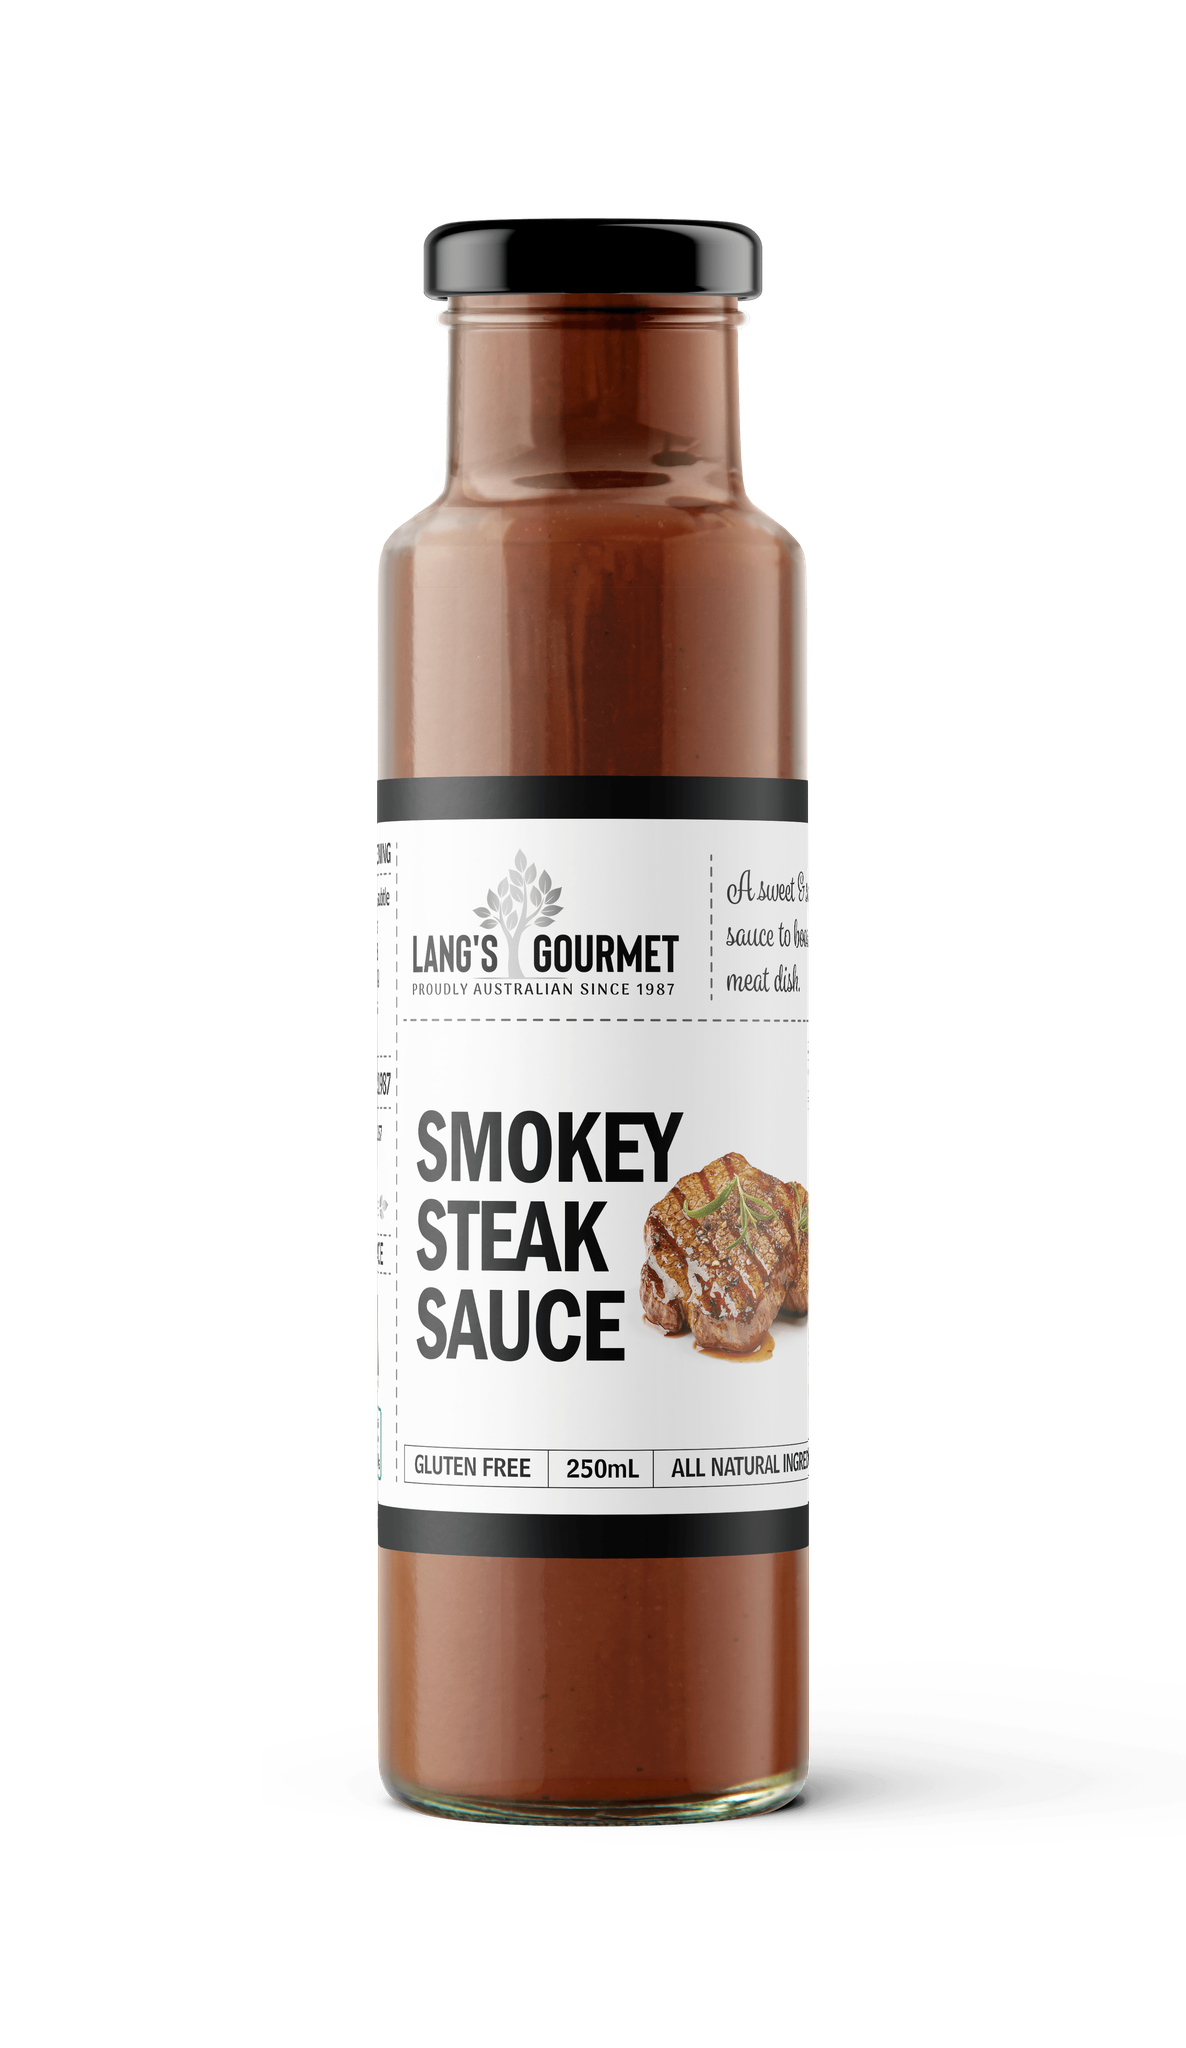 Lang's Gourmet Smokey Steak Sauce